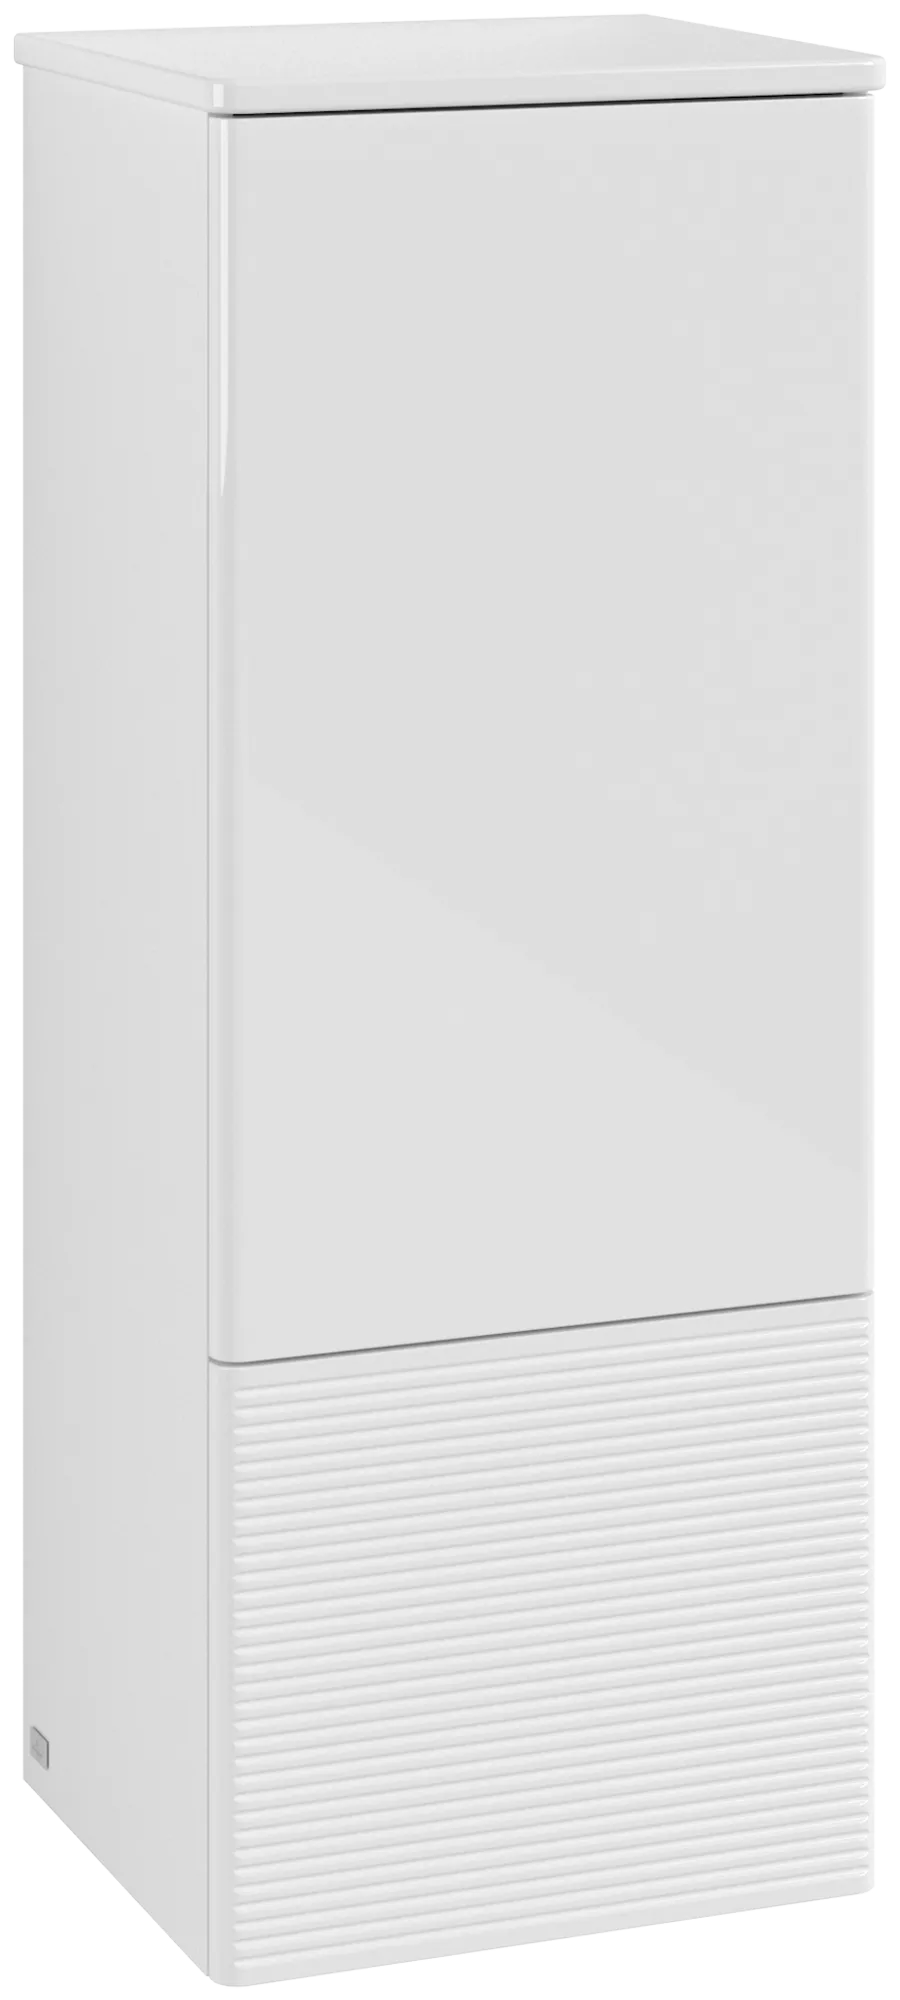 εικόνα του VILLEROY BOCH Antao Medium-height cabinet, with lighting, 1 door, 414 x 1039 x 356 mm, Front with grain texture, Glossy White Lacquer / Glossy White Lacquer #L44100GF